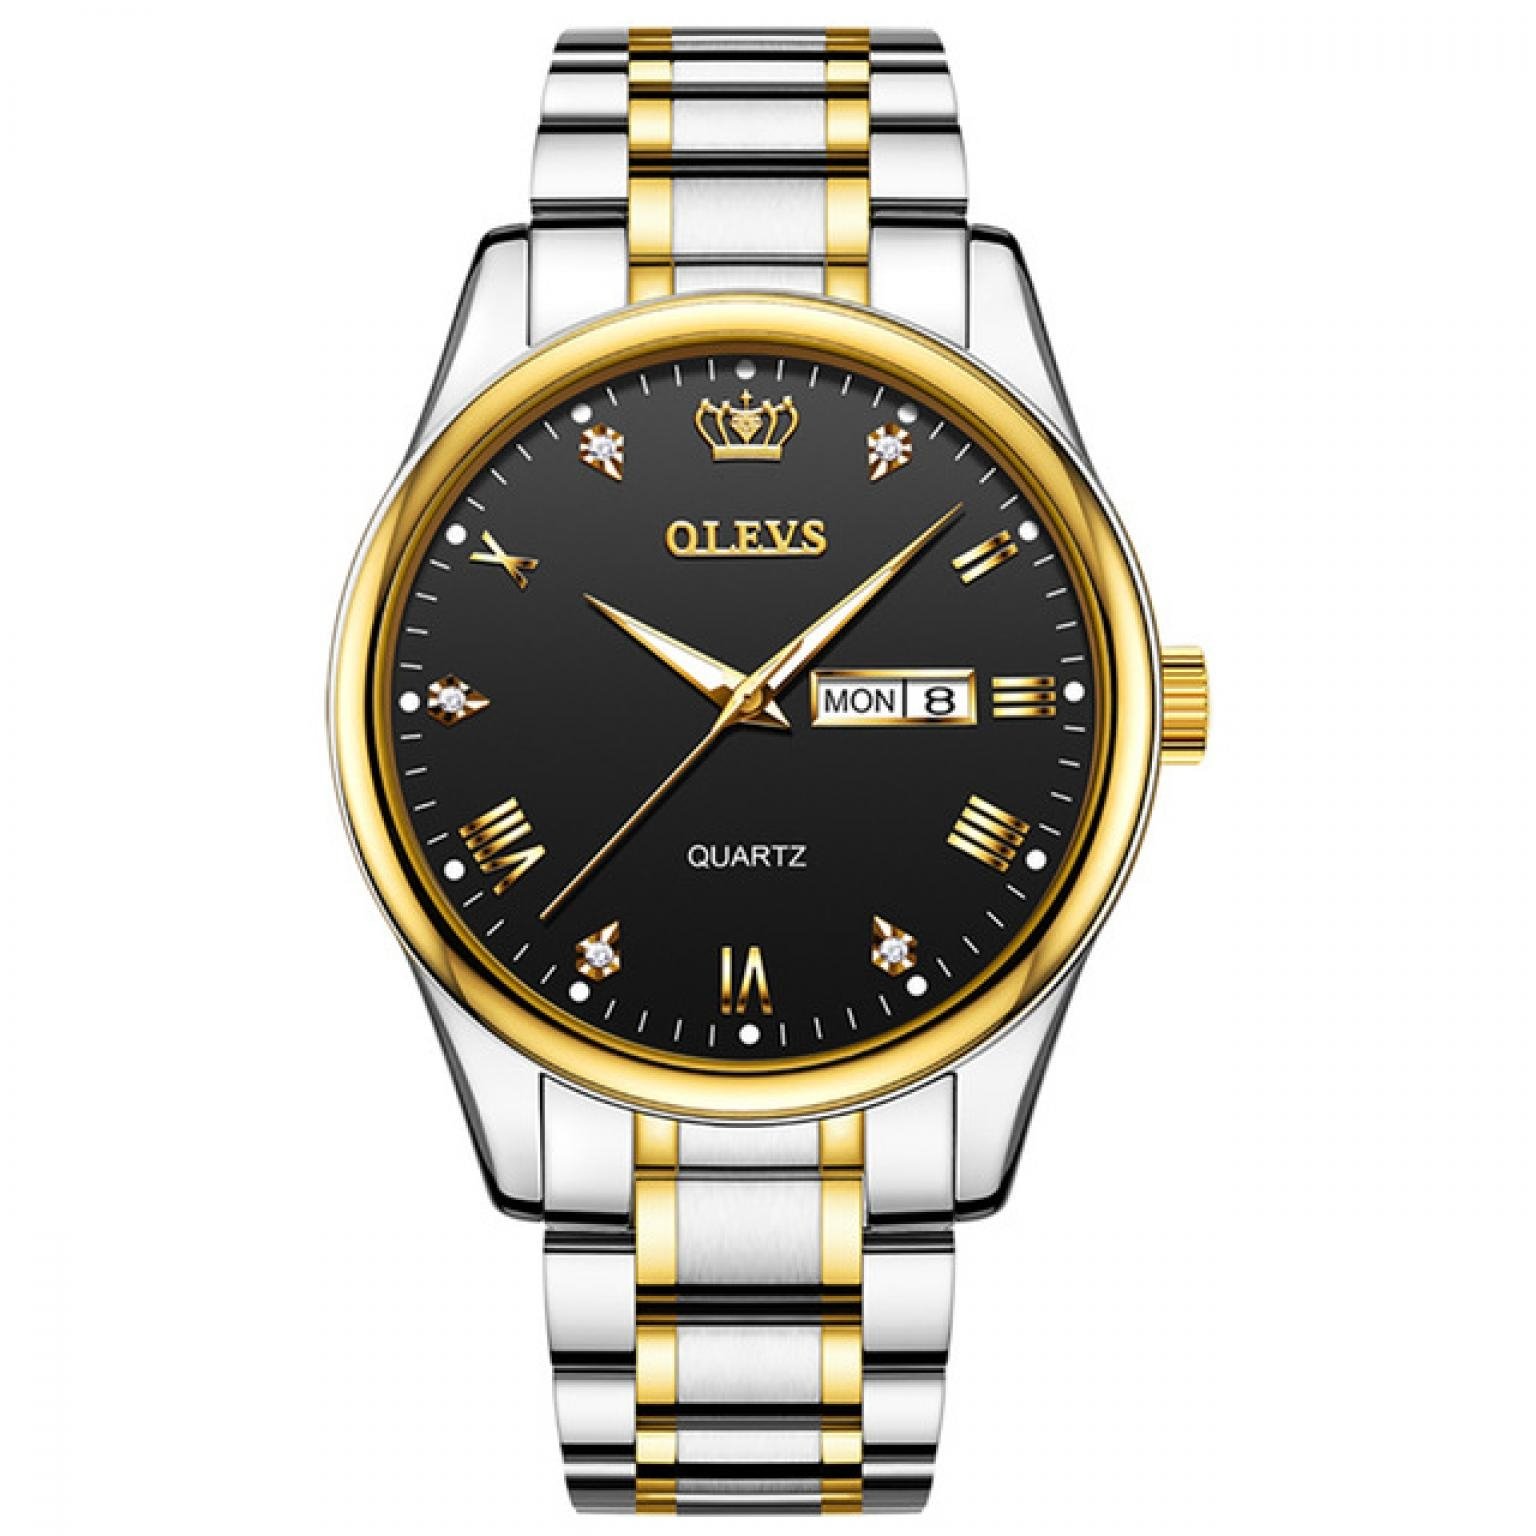  ORIGINAL OLEVS Watch Men Luxury Sport Quartz Clock Top Brand Stainless Steel Waterproof Wristwatch (OLEVS 5563)